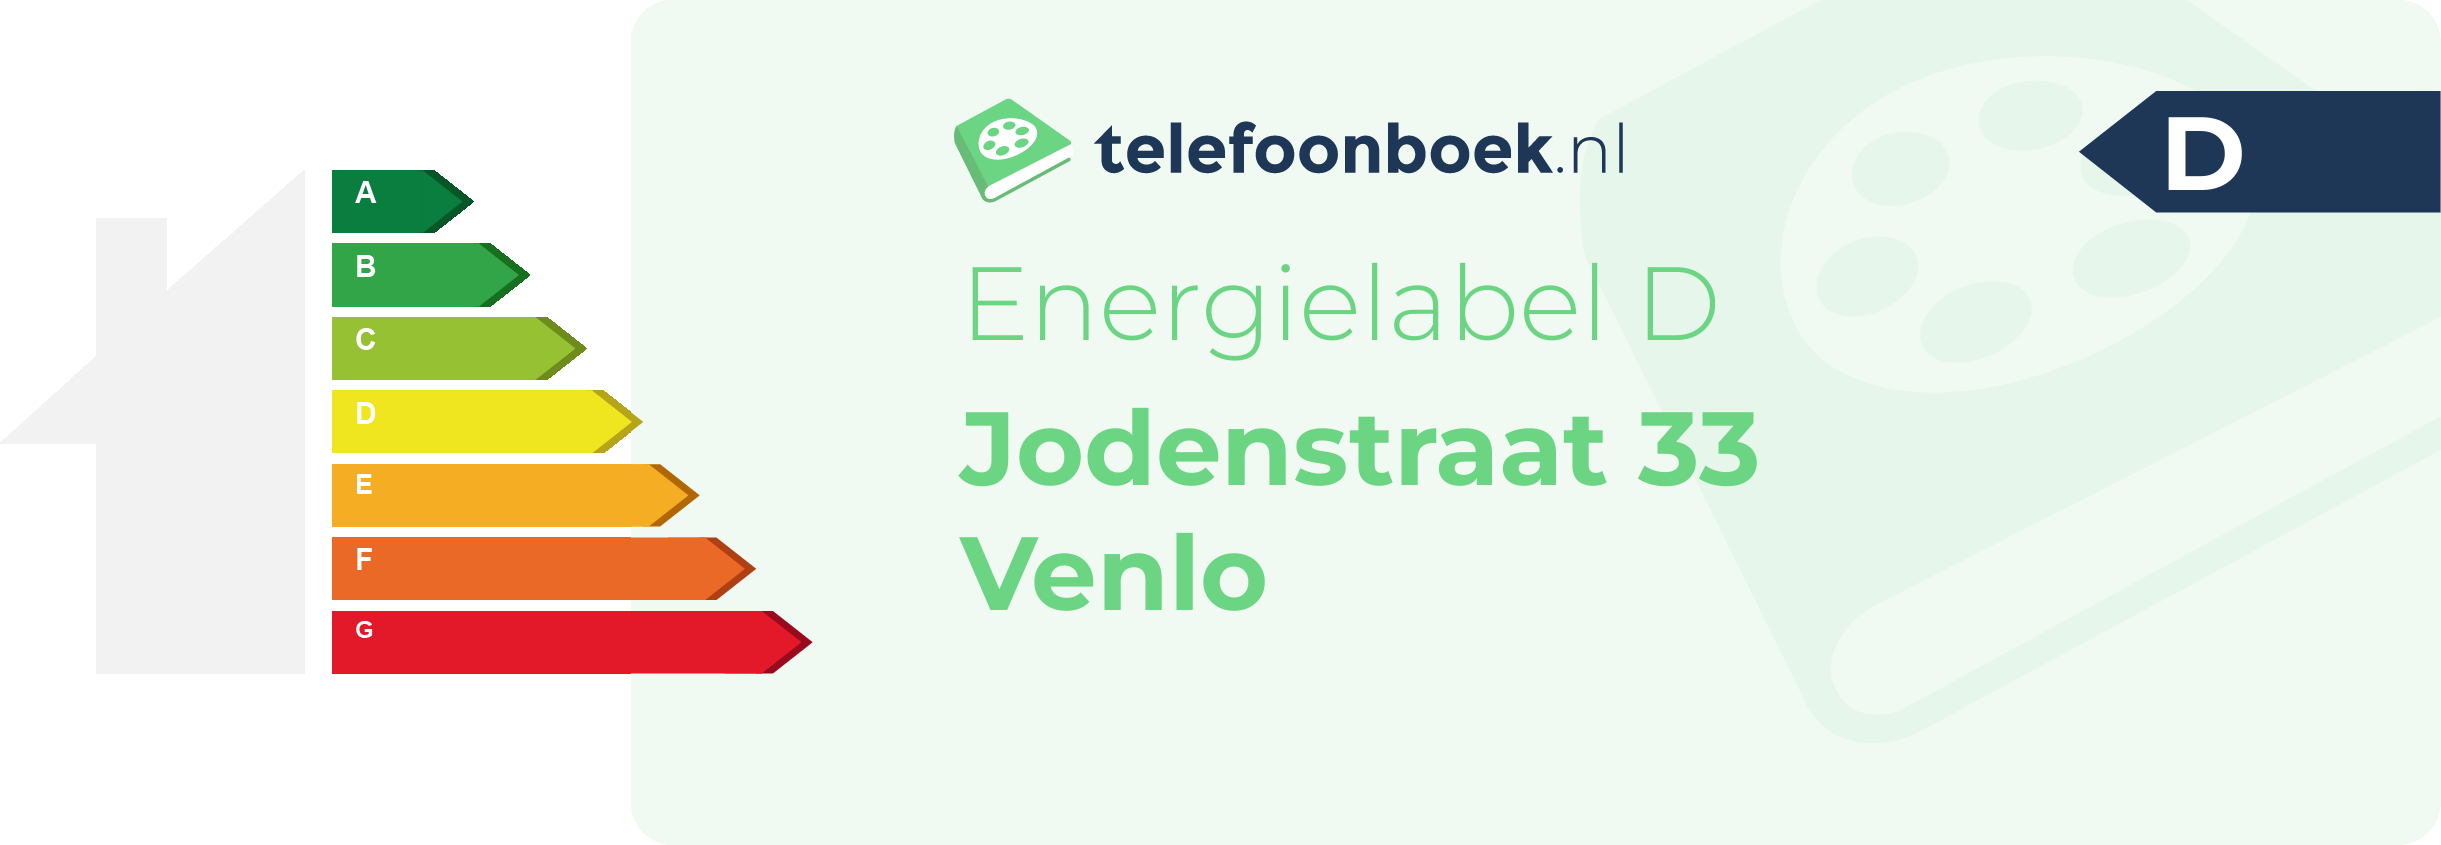 Energielabel Jodenstraat 33 Venlo